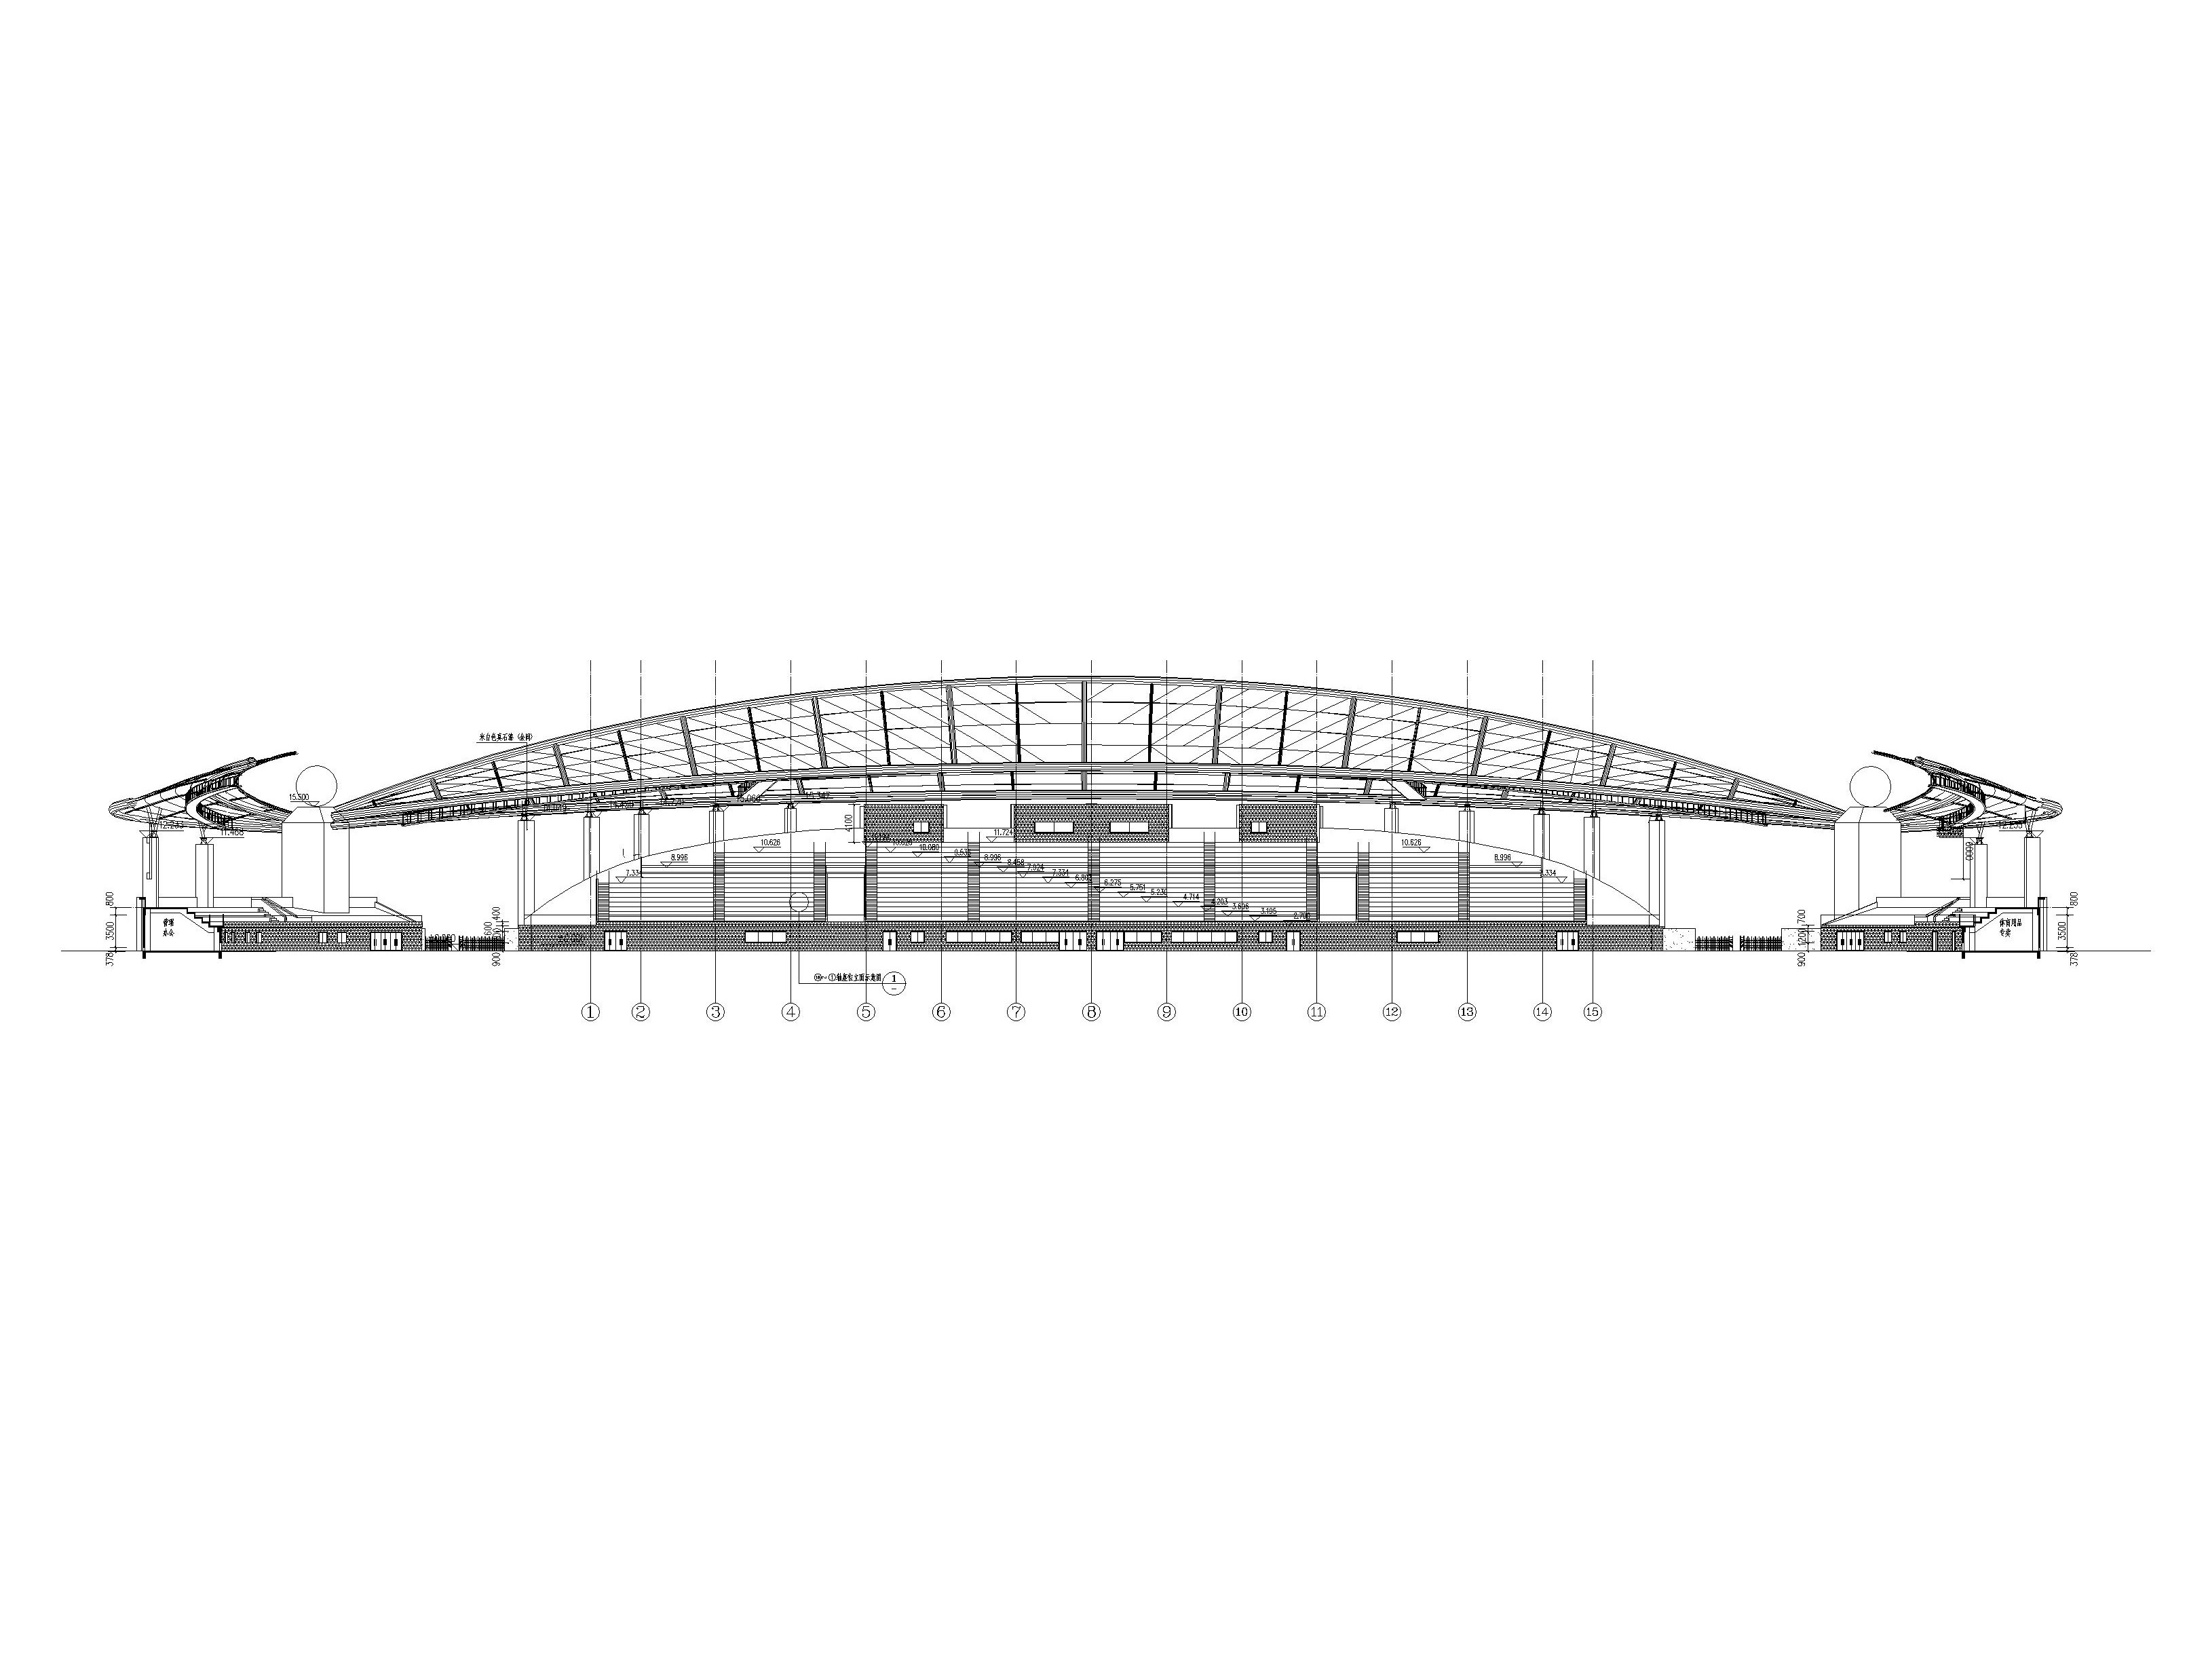 修文县体育场建筑设计施工图(含招标文件)-2-2剖面图